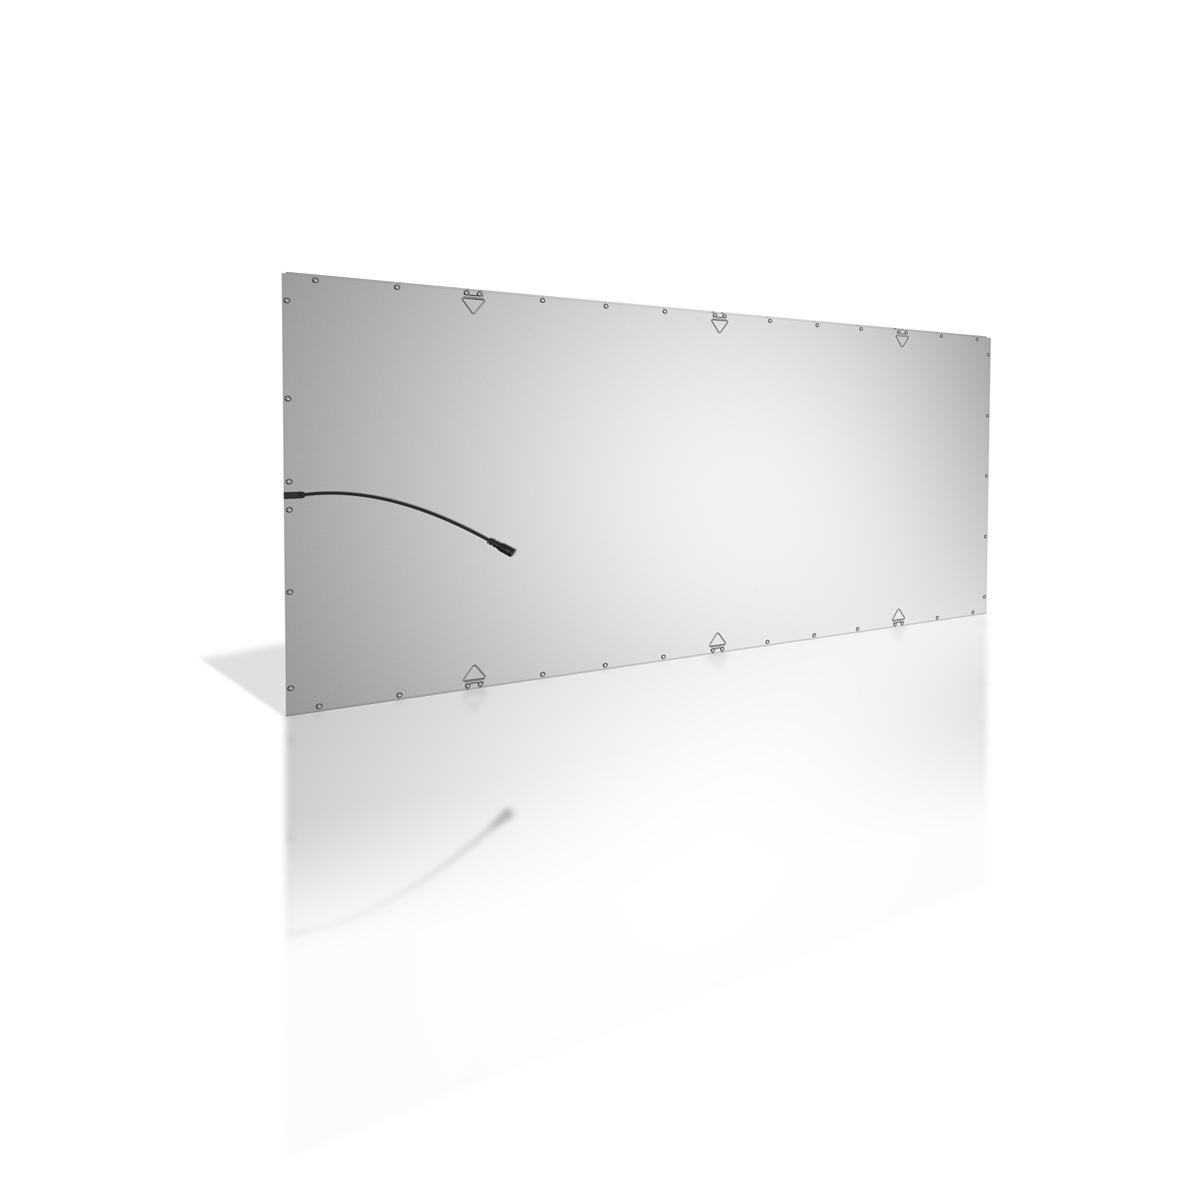 LED Panel 120x60cm 60W Rahmen silber - Lichtfarbe: Warmweiß 3000K